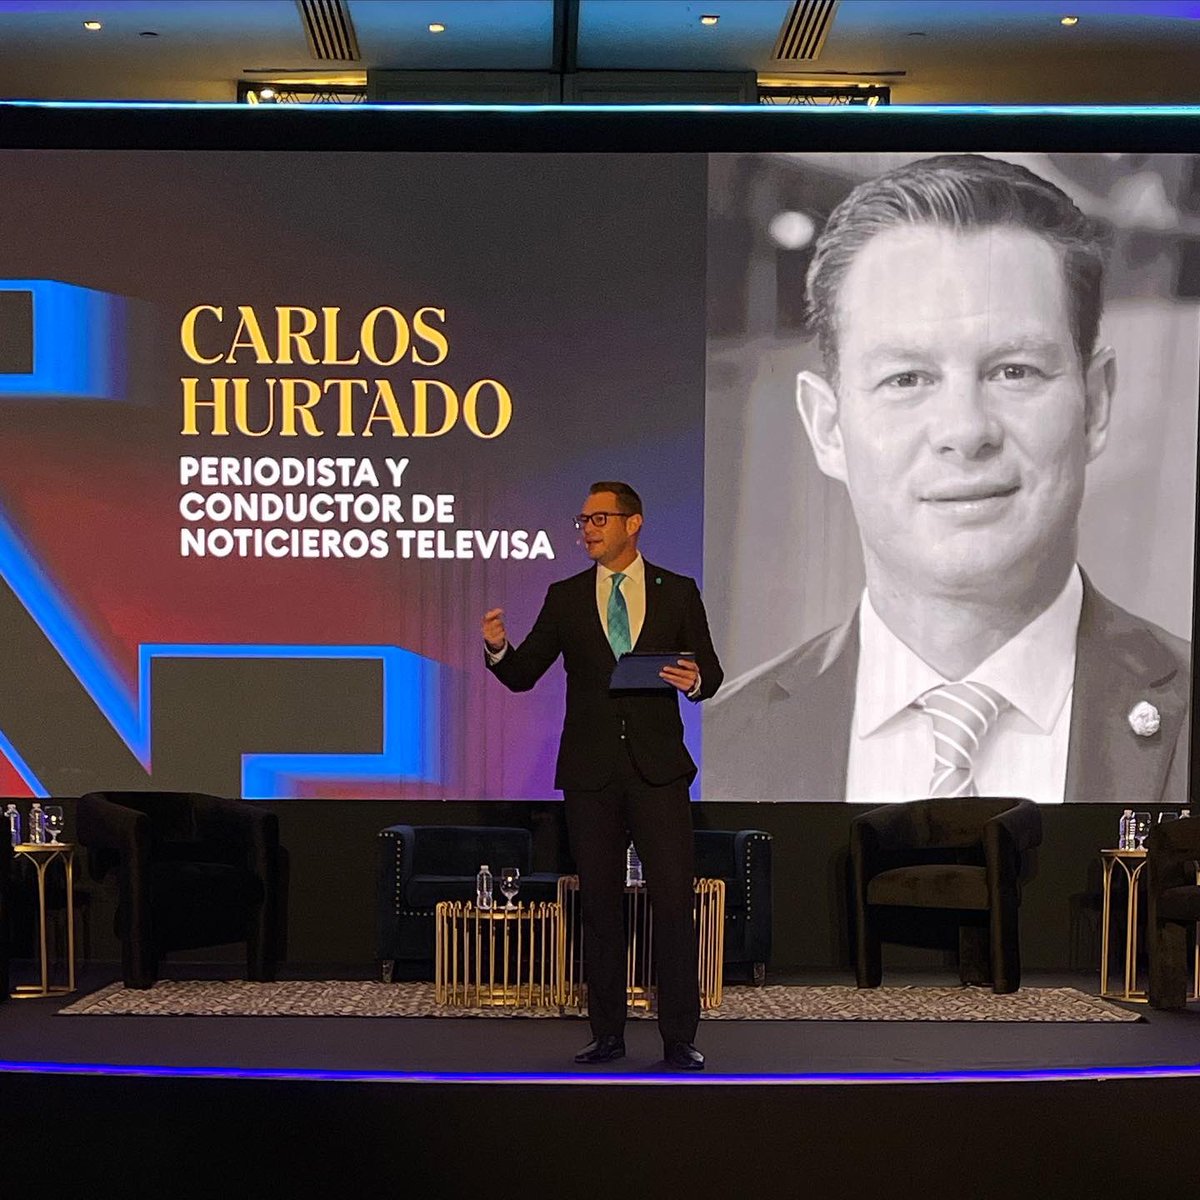 Foro Forbes Economía y Negocios 🤓 @Forbes_Mexico #ForoForbes